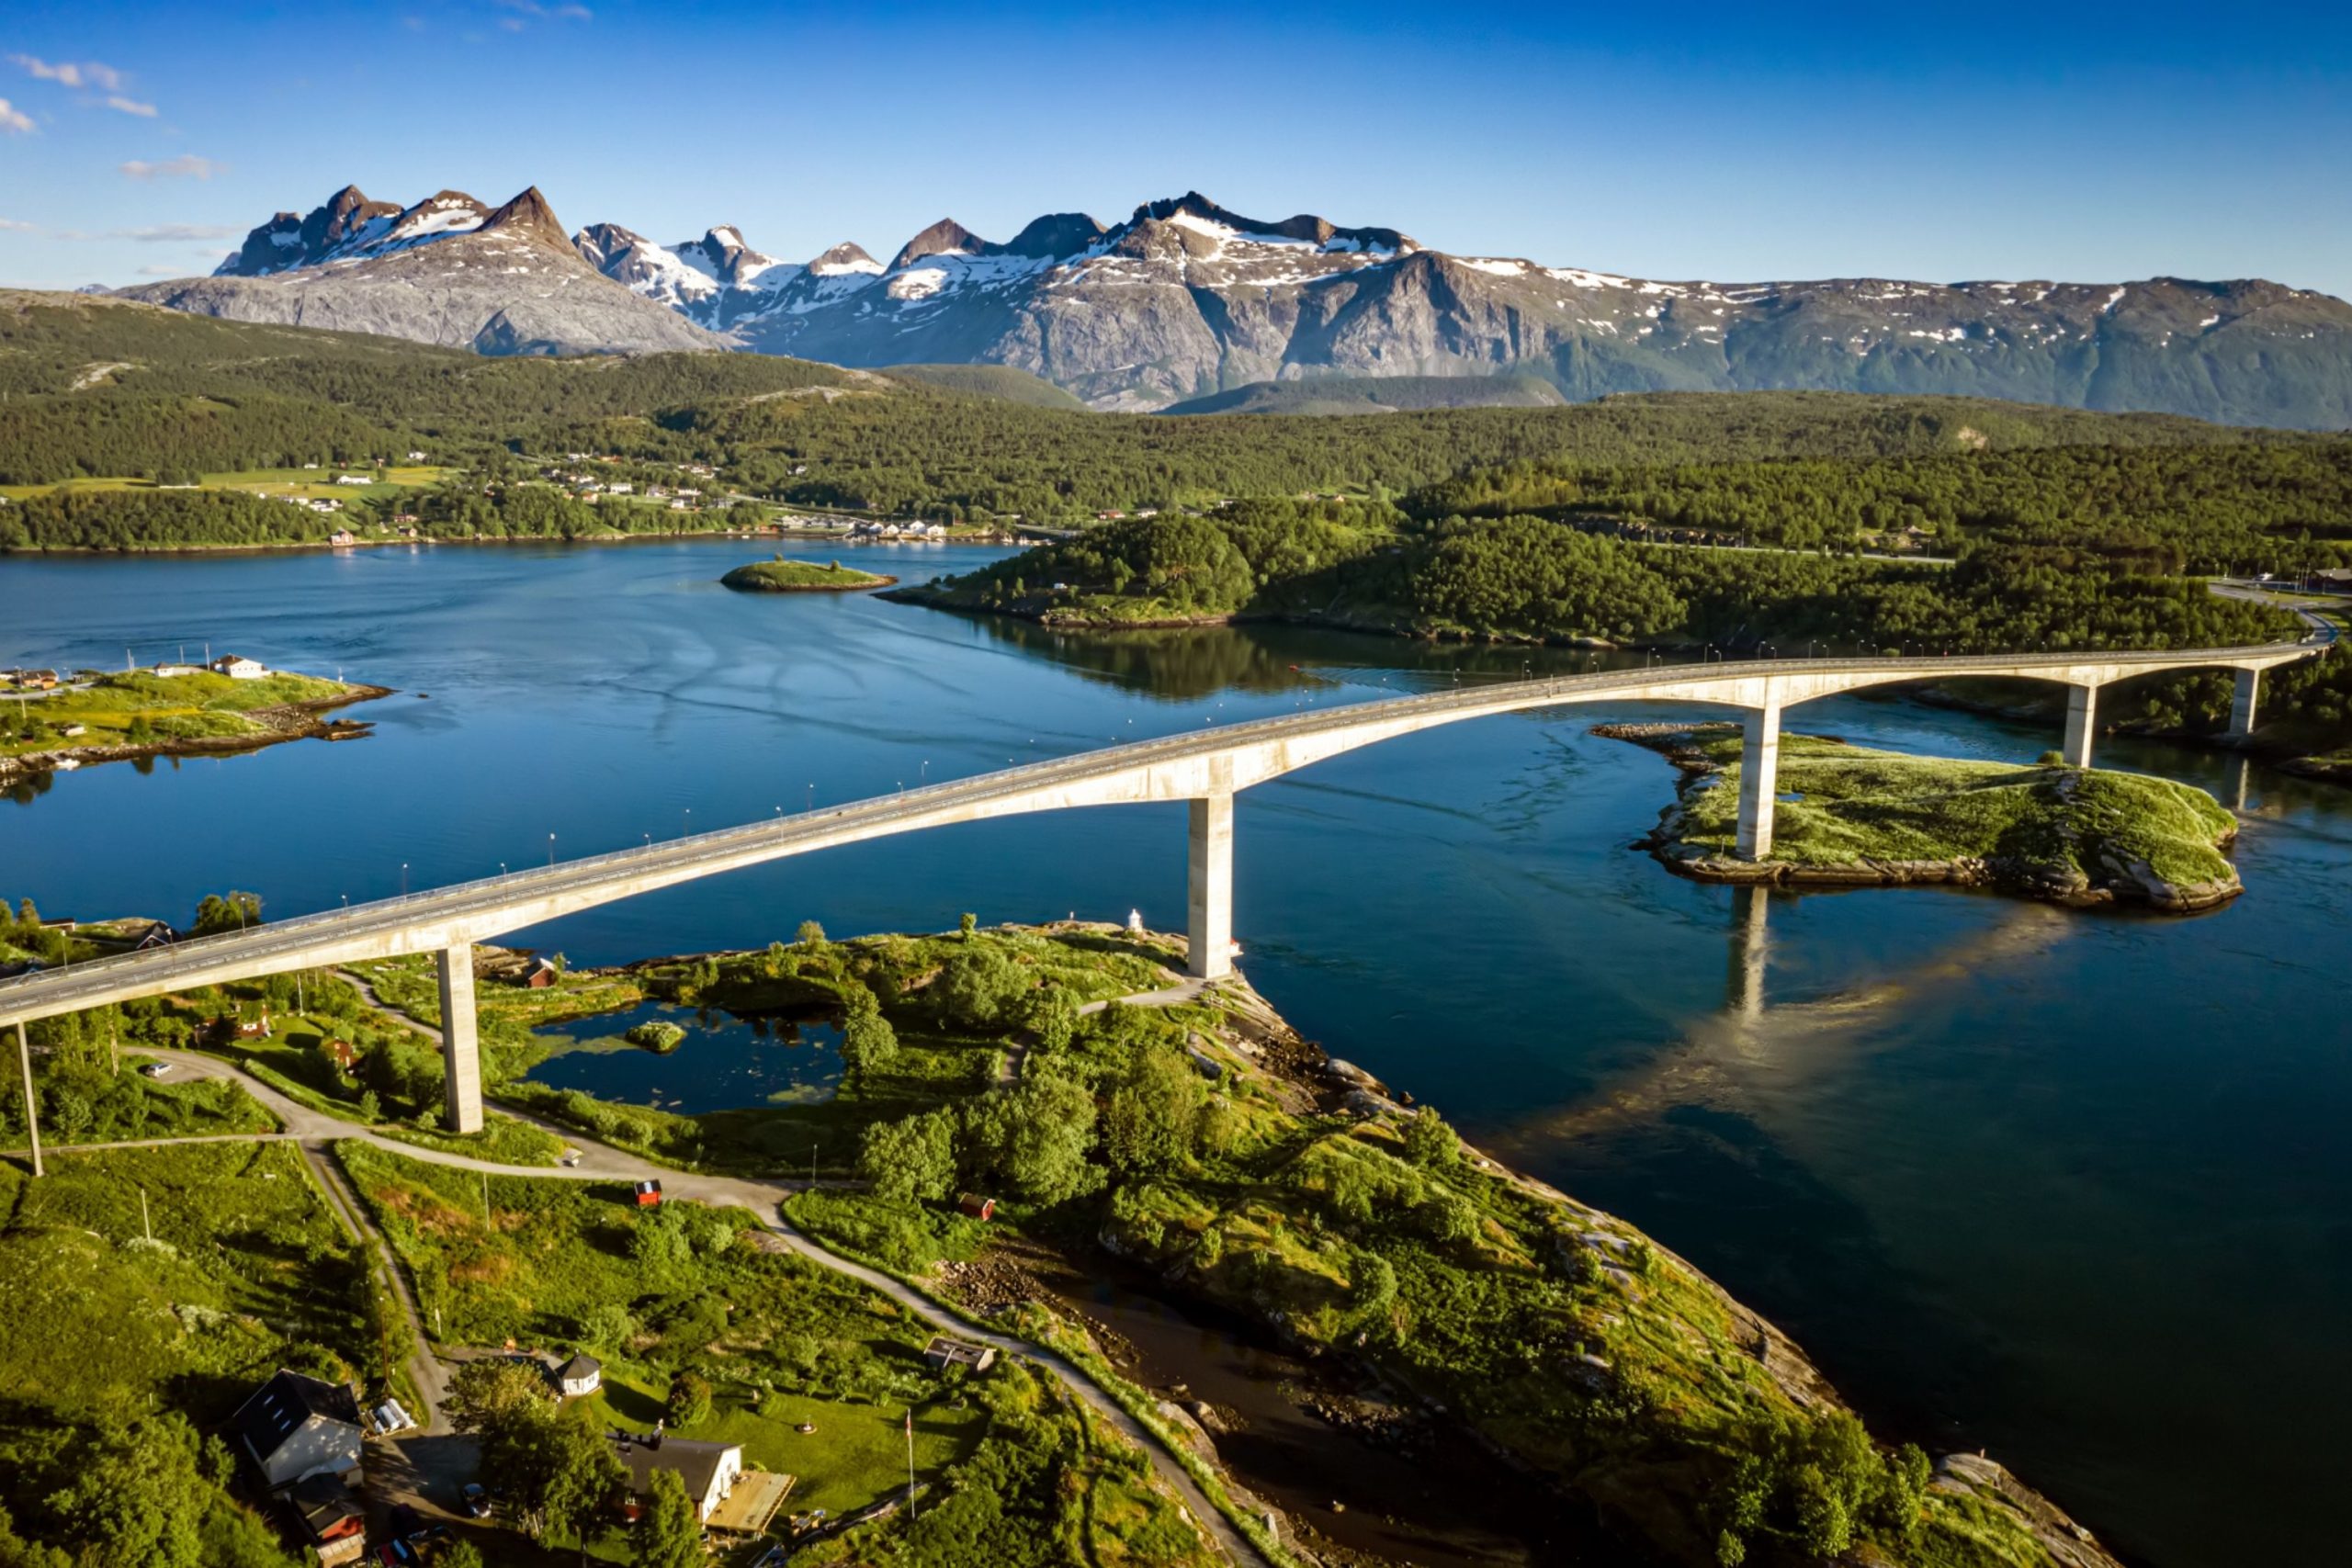 Mýtné v Norsku 2022: Je potřeba se registrovat předem?